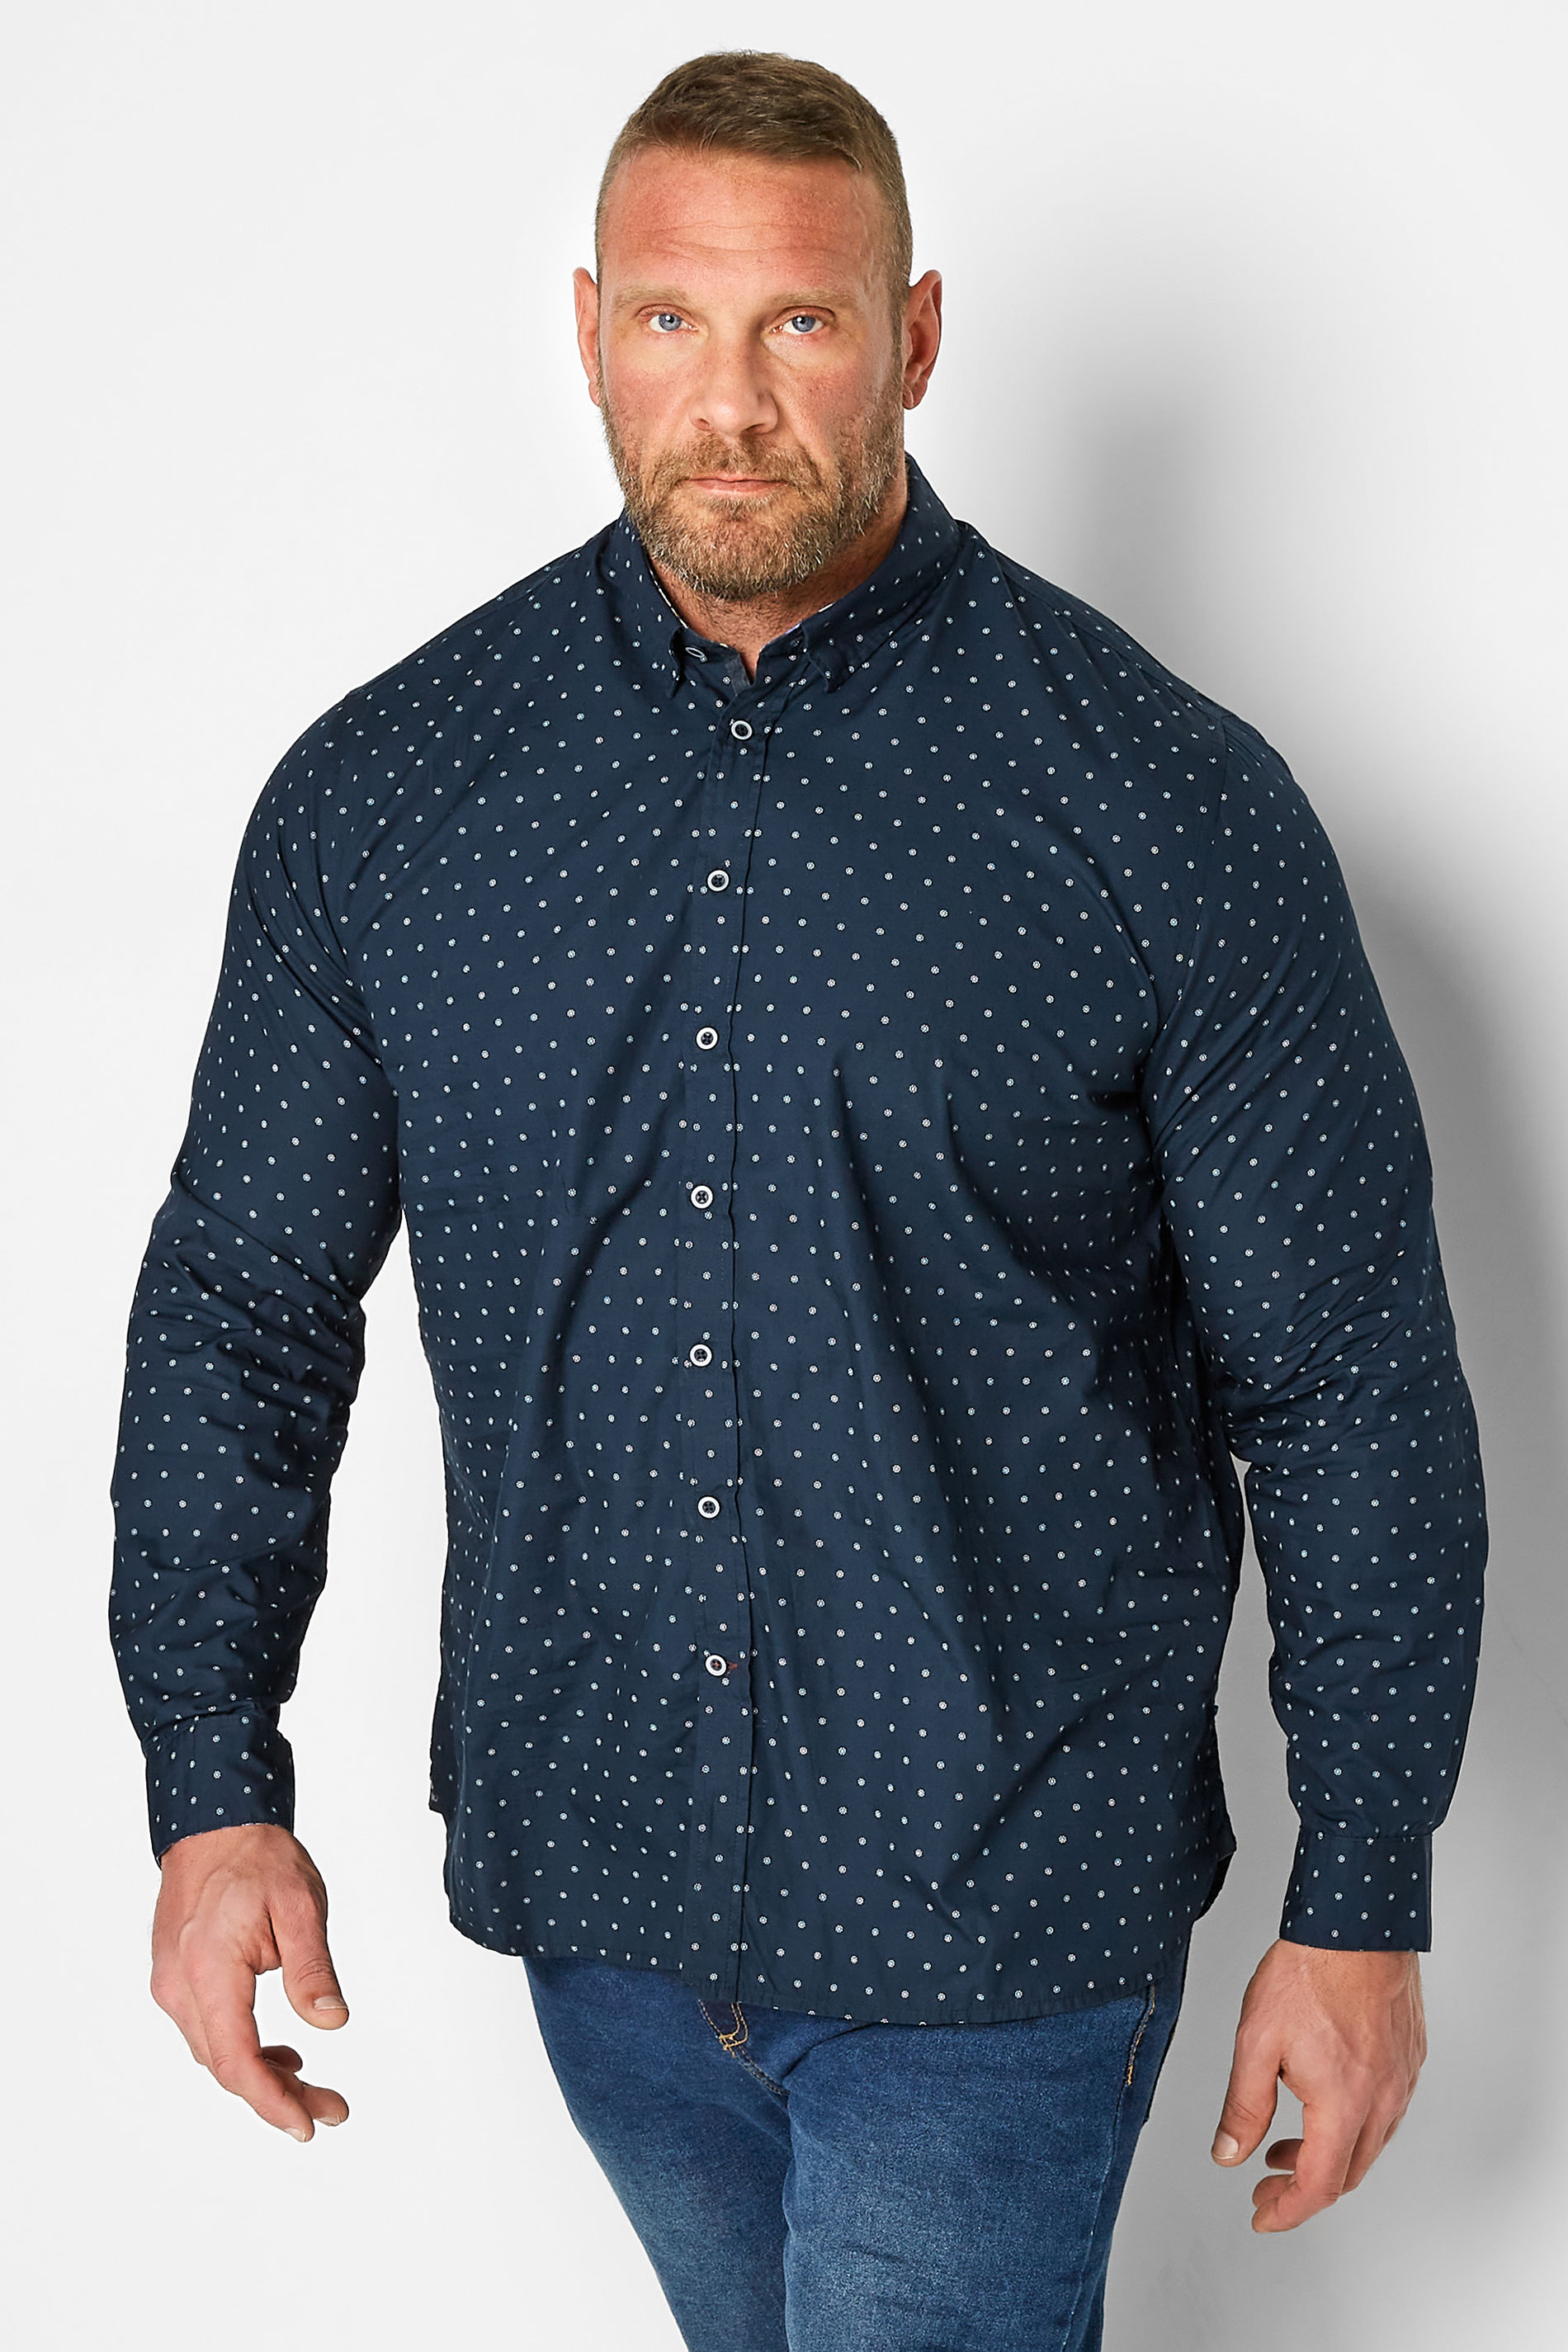 D555 Big & Tall Navy Blue Polka Dot Print Long Sleeve Shirt | BadRhino 1